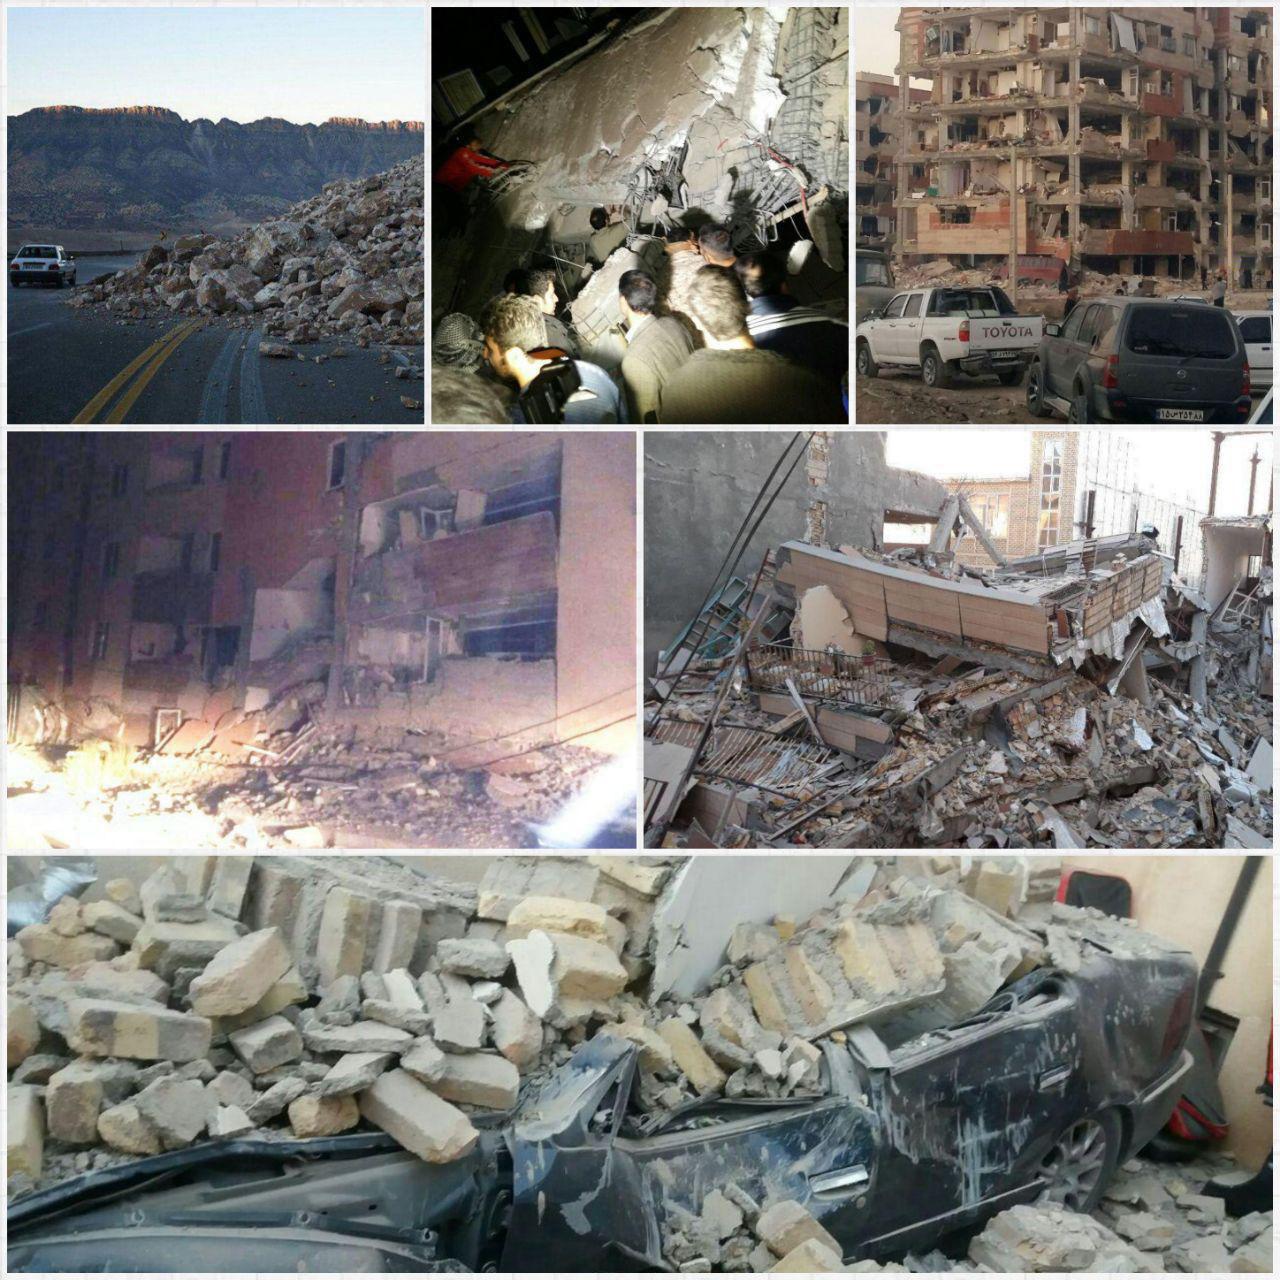 تاکنون ۲۰۰ نفر کشته و بیش از ۱۶۸۶ مصدوم/ پالایشگاه ایلام به دلیل مسائل امنیتی تعطیل شده + عکس و فیلم